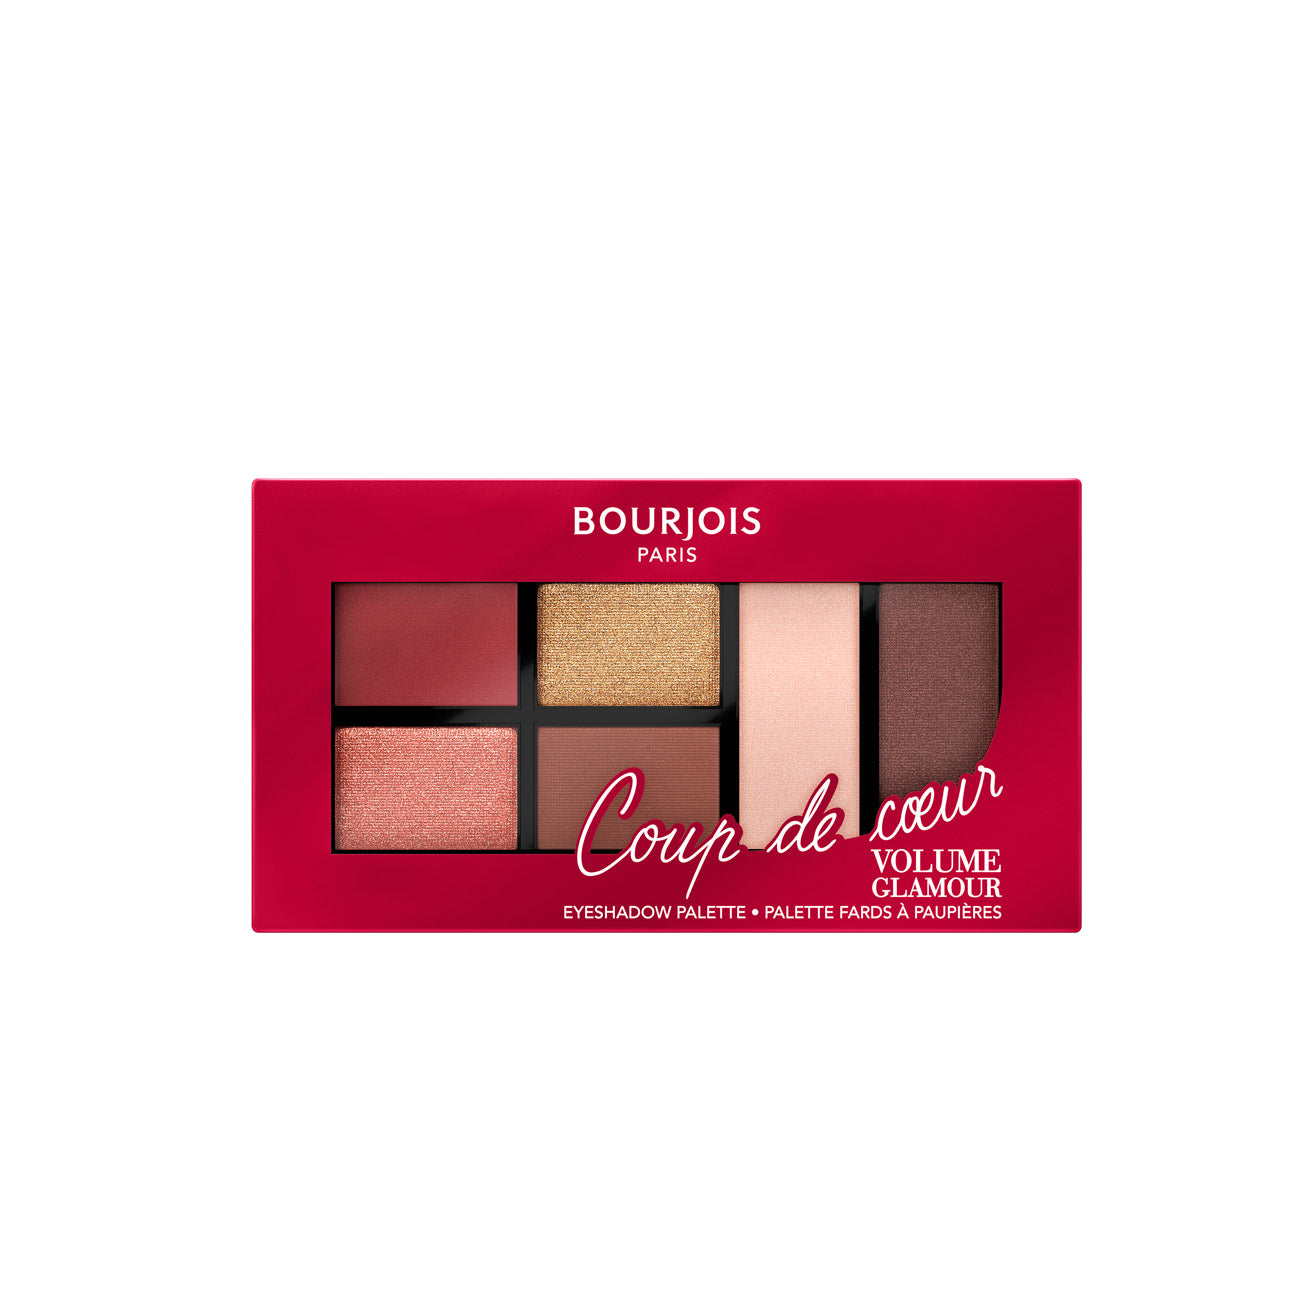 Bourjois Paris Volume Glamour Eyeshadow Palette - MazenOnline